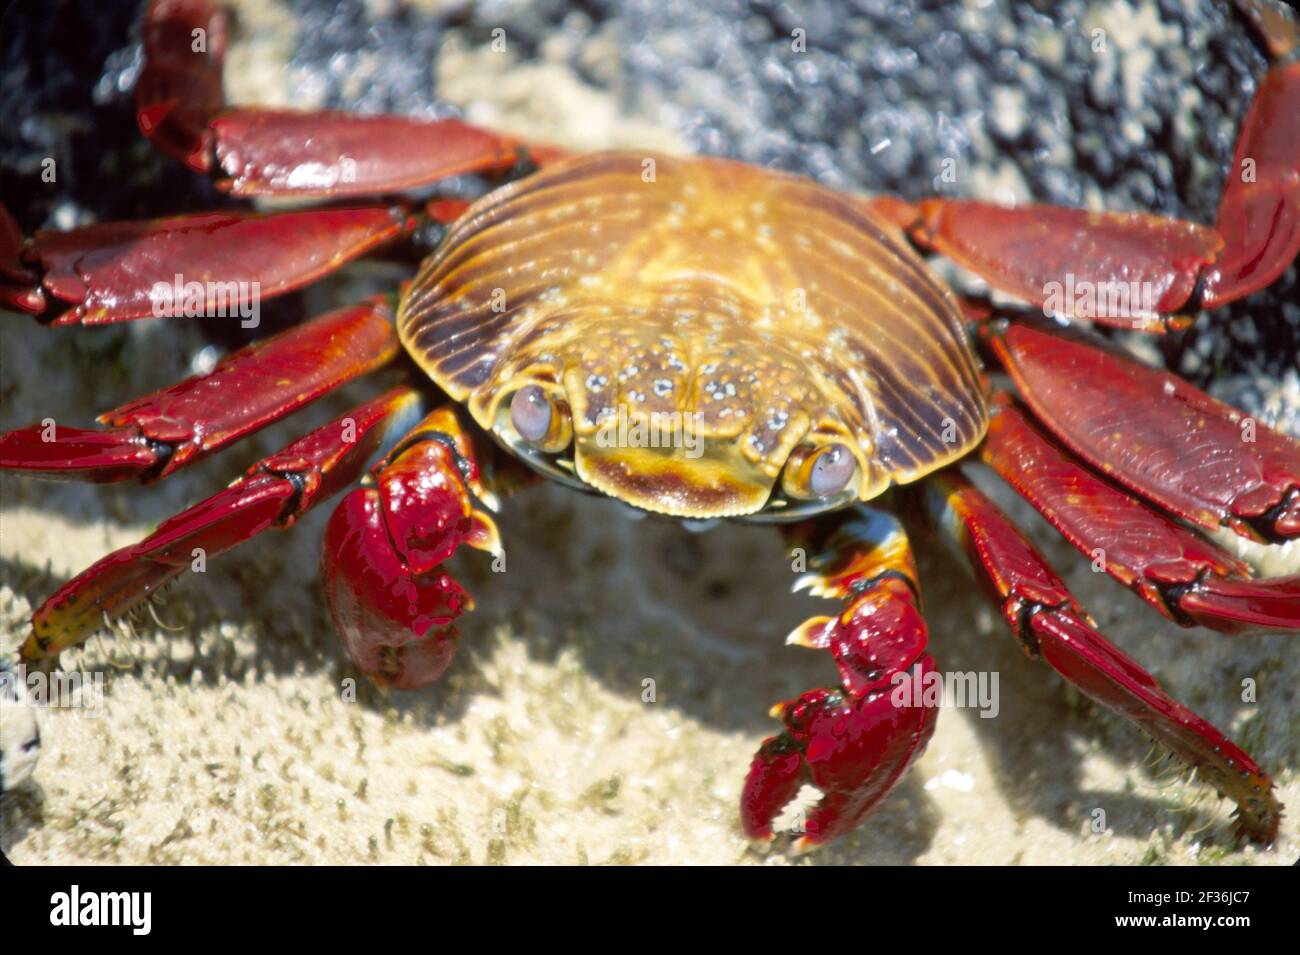 Îles Galapagos Île Floreana Équateur Équateur Équatorienne Amérique du Sud américain, Flour Beach Sally Lightfoot Crab Lava rock, Banque D'Images